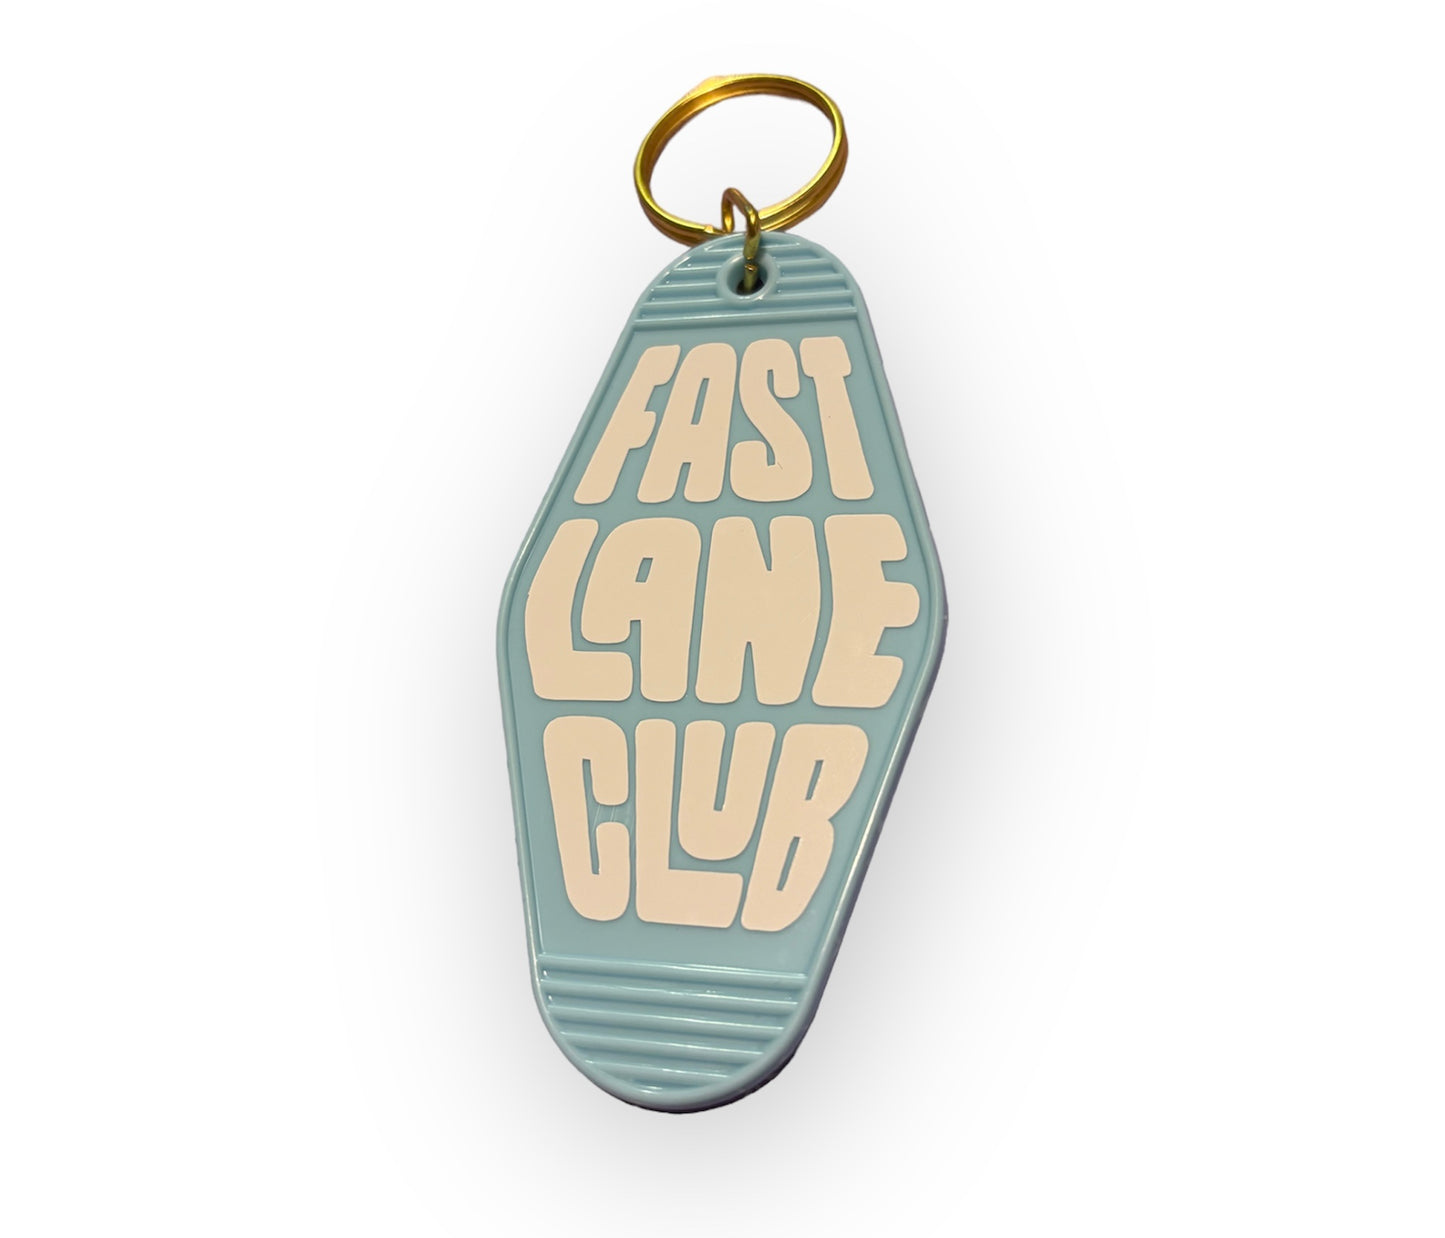 Fast Lane Club Keychain